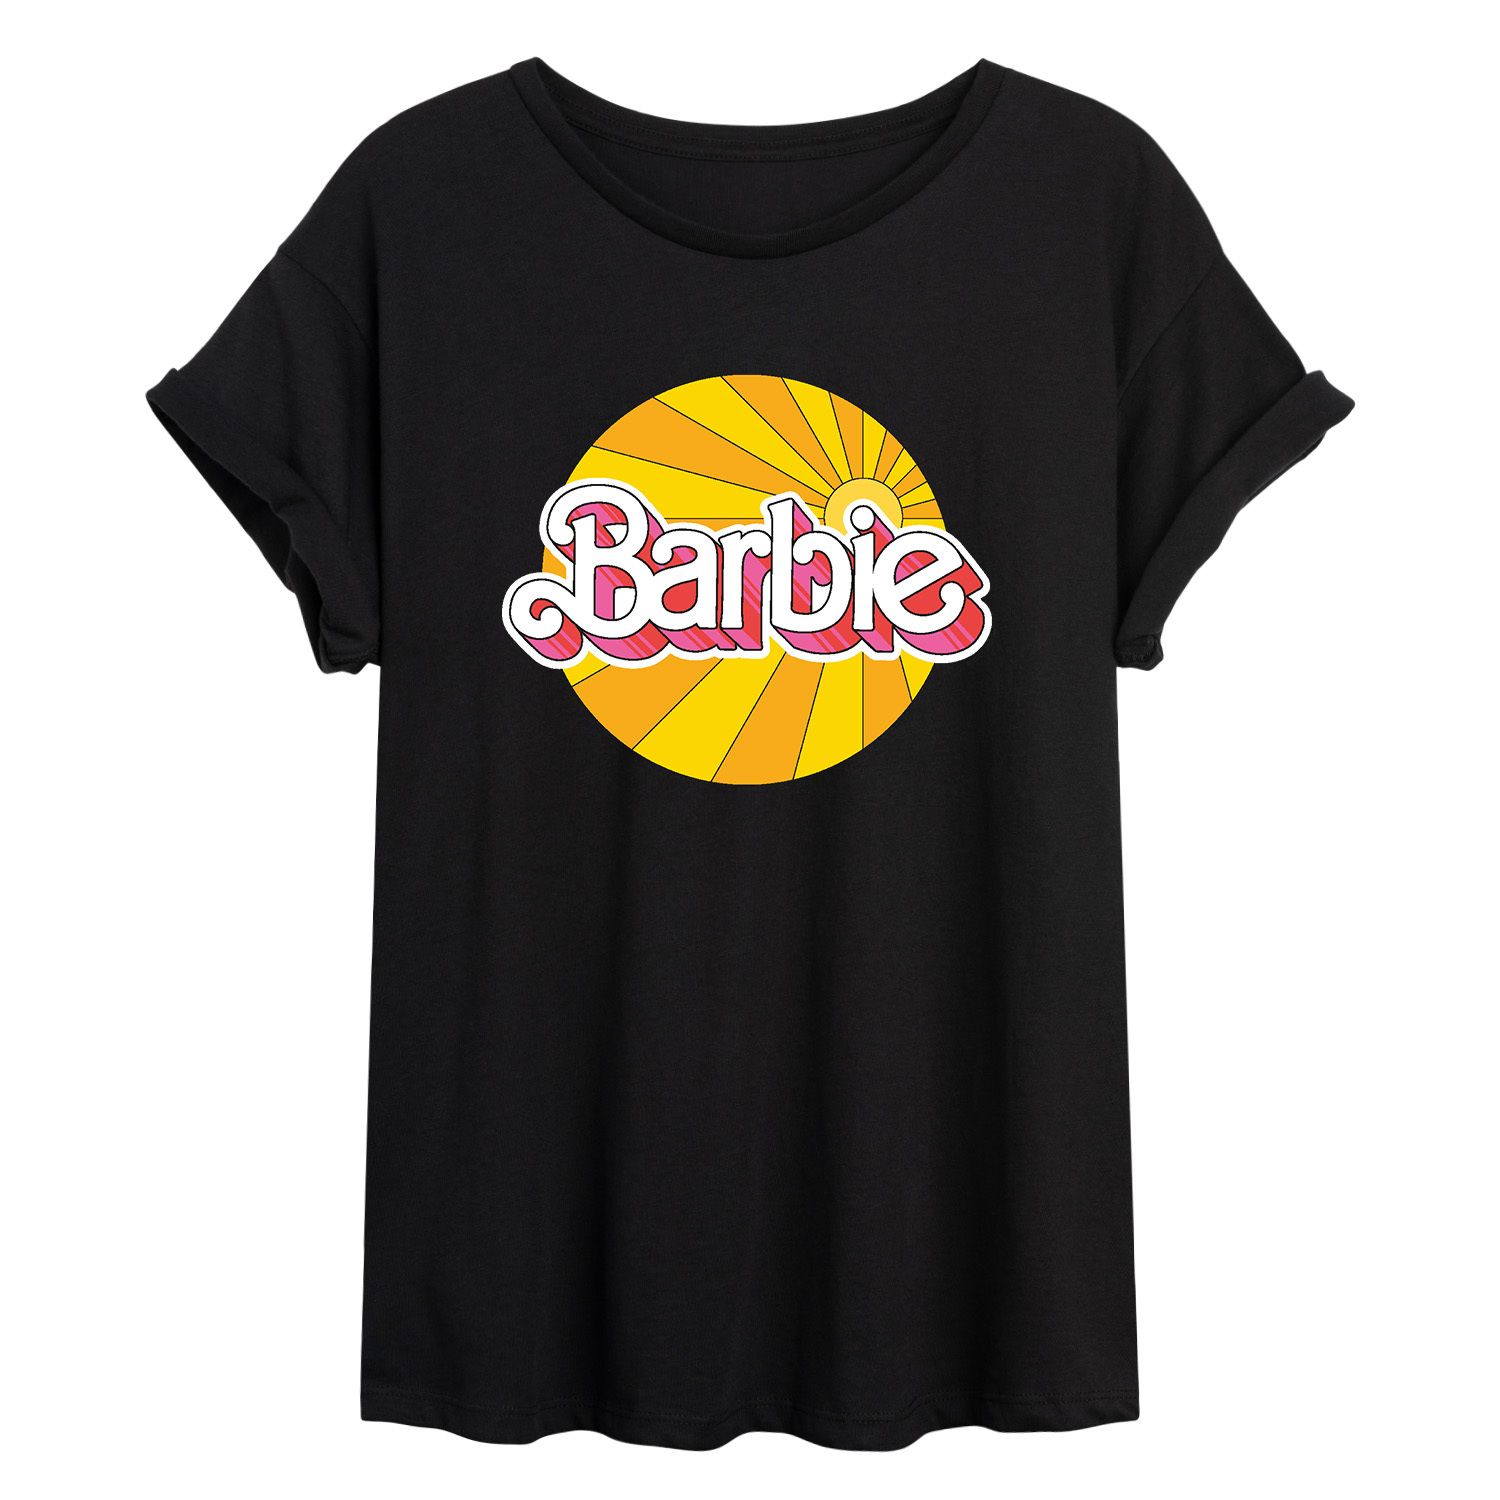 Классическая футболка Barbie с логотипом Sunburst для юниоров Licensed Character классическая футболка с логотипом barbie для юниоров licensed character